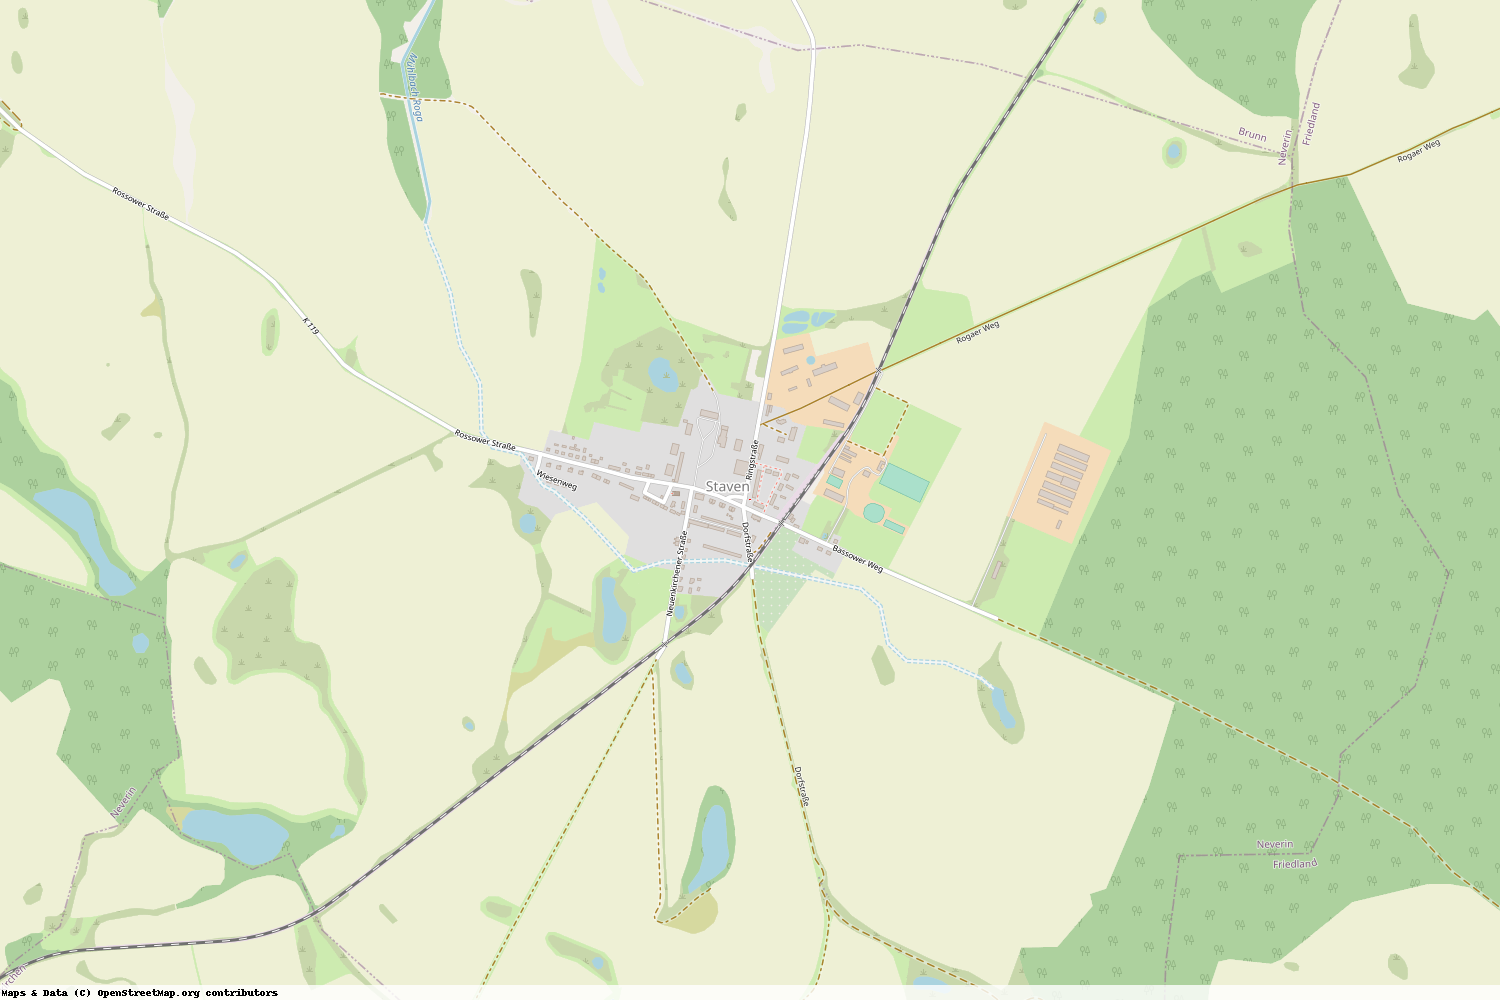 Ist gerade Stromausfall in Mecklenburg-Vorpommern - Mecklenburgische Seenplatte - Staven?